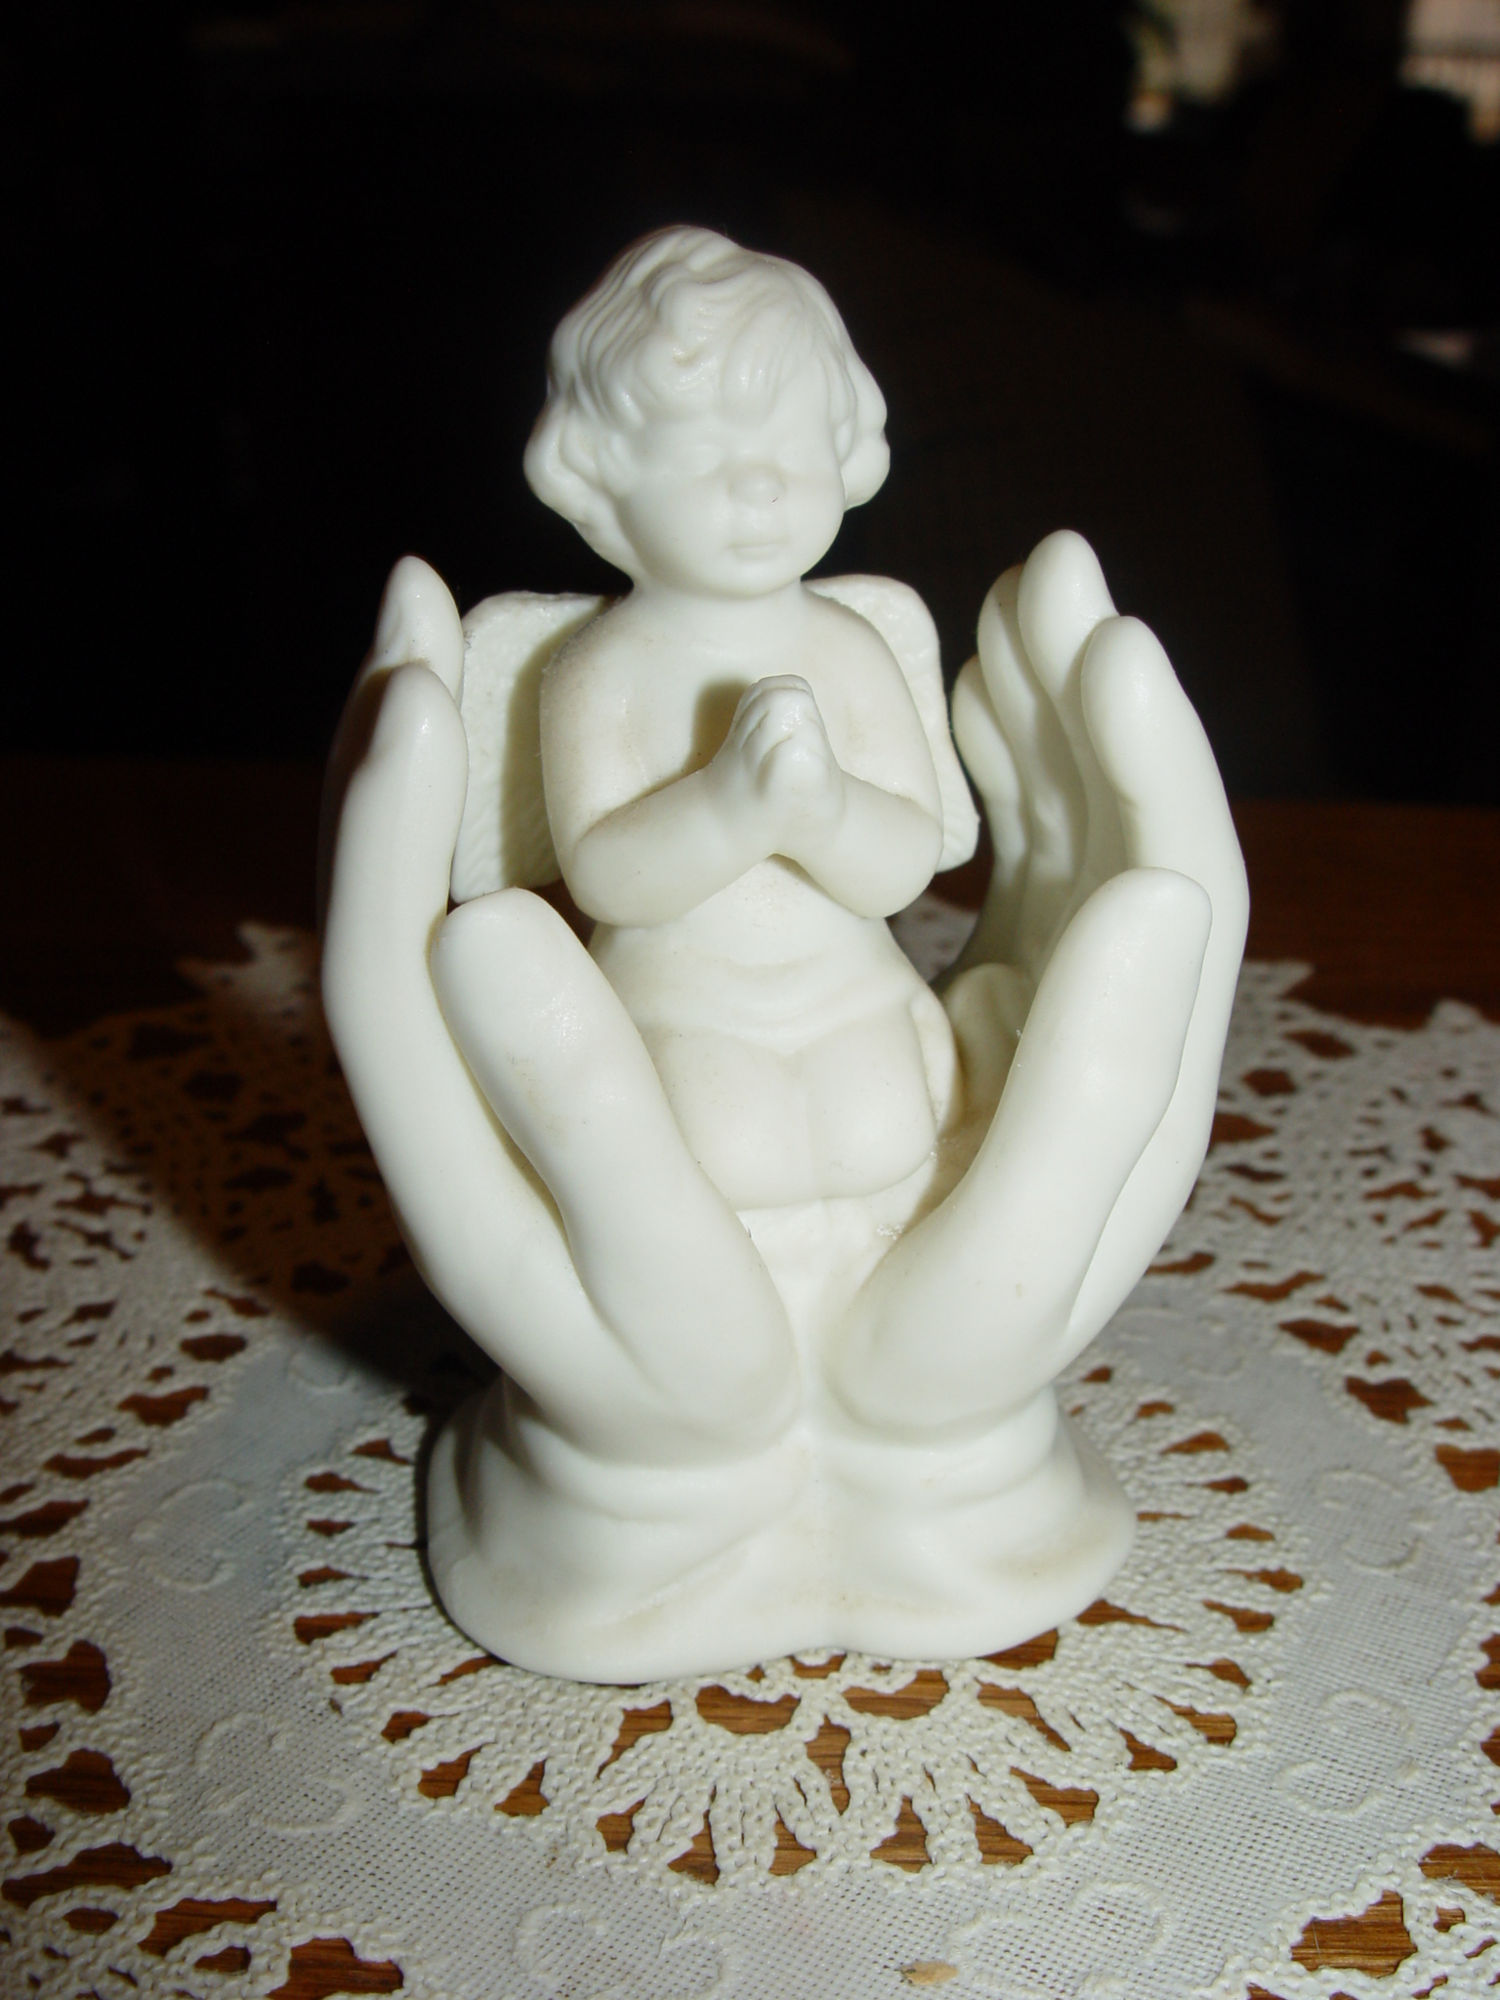 Praying Baby Cherub in Open
                                        Hands, Memorial Ceramic Bisque
                                        Vintage Figurine